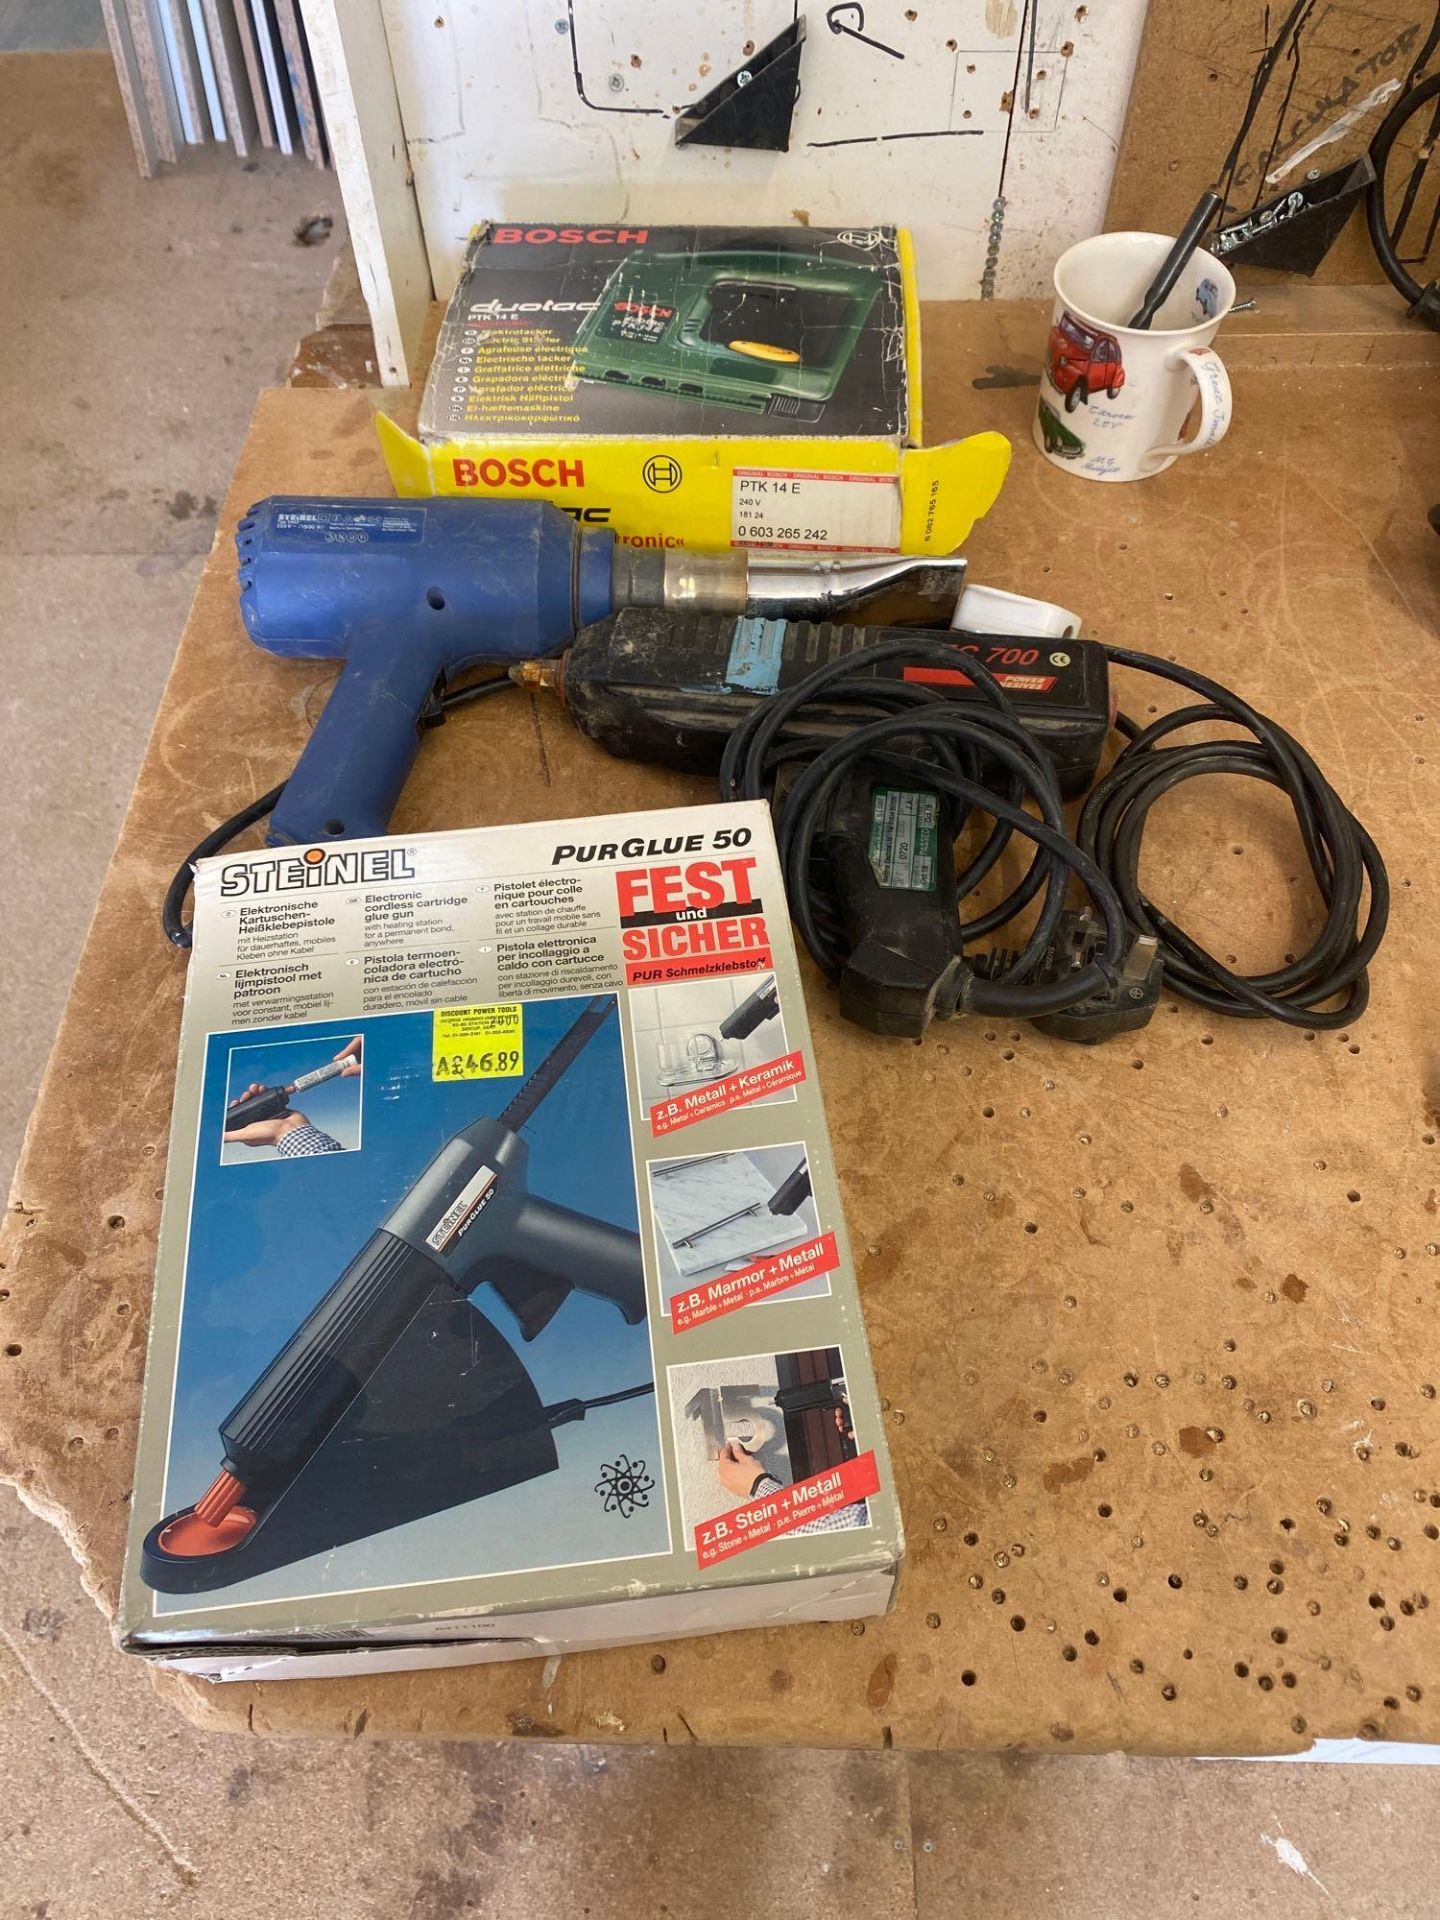 2 glue guns 240v 1 air gun 240v and a Bosch electric stapler 240v